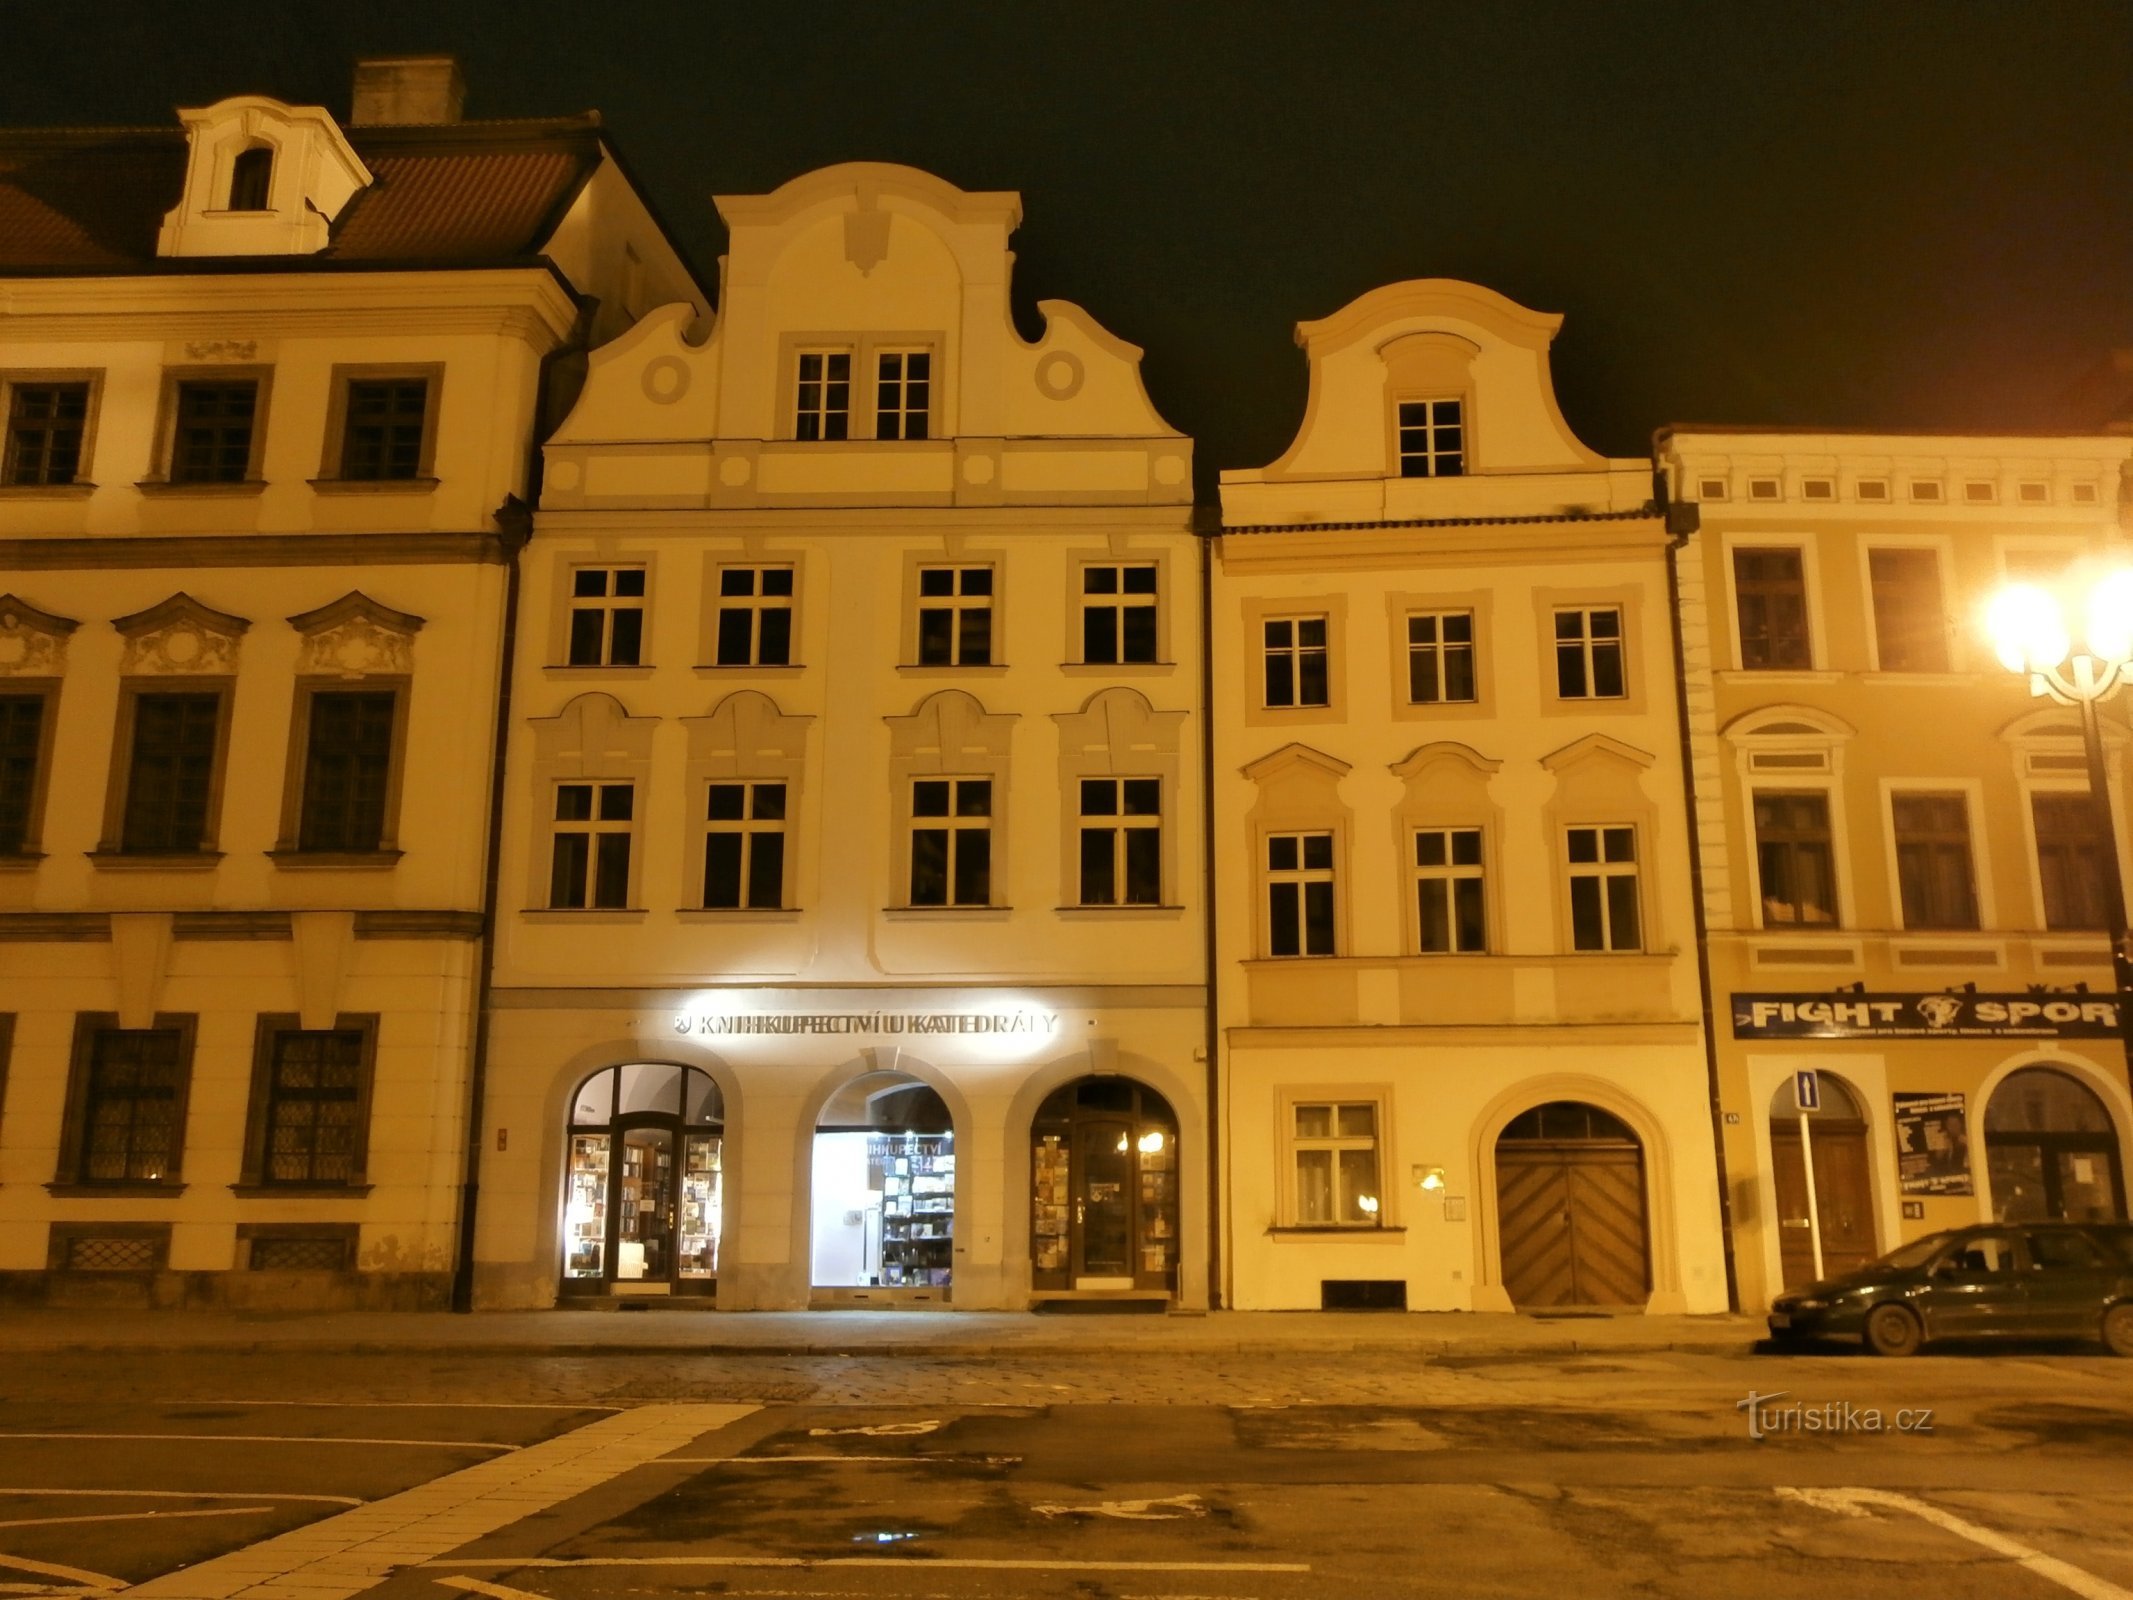 Velké náměstí čp. 36-37 (Hradec Králové, 4.11.2012)